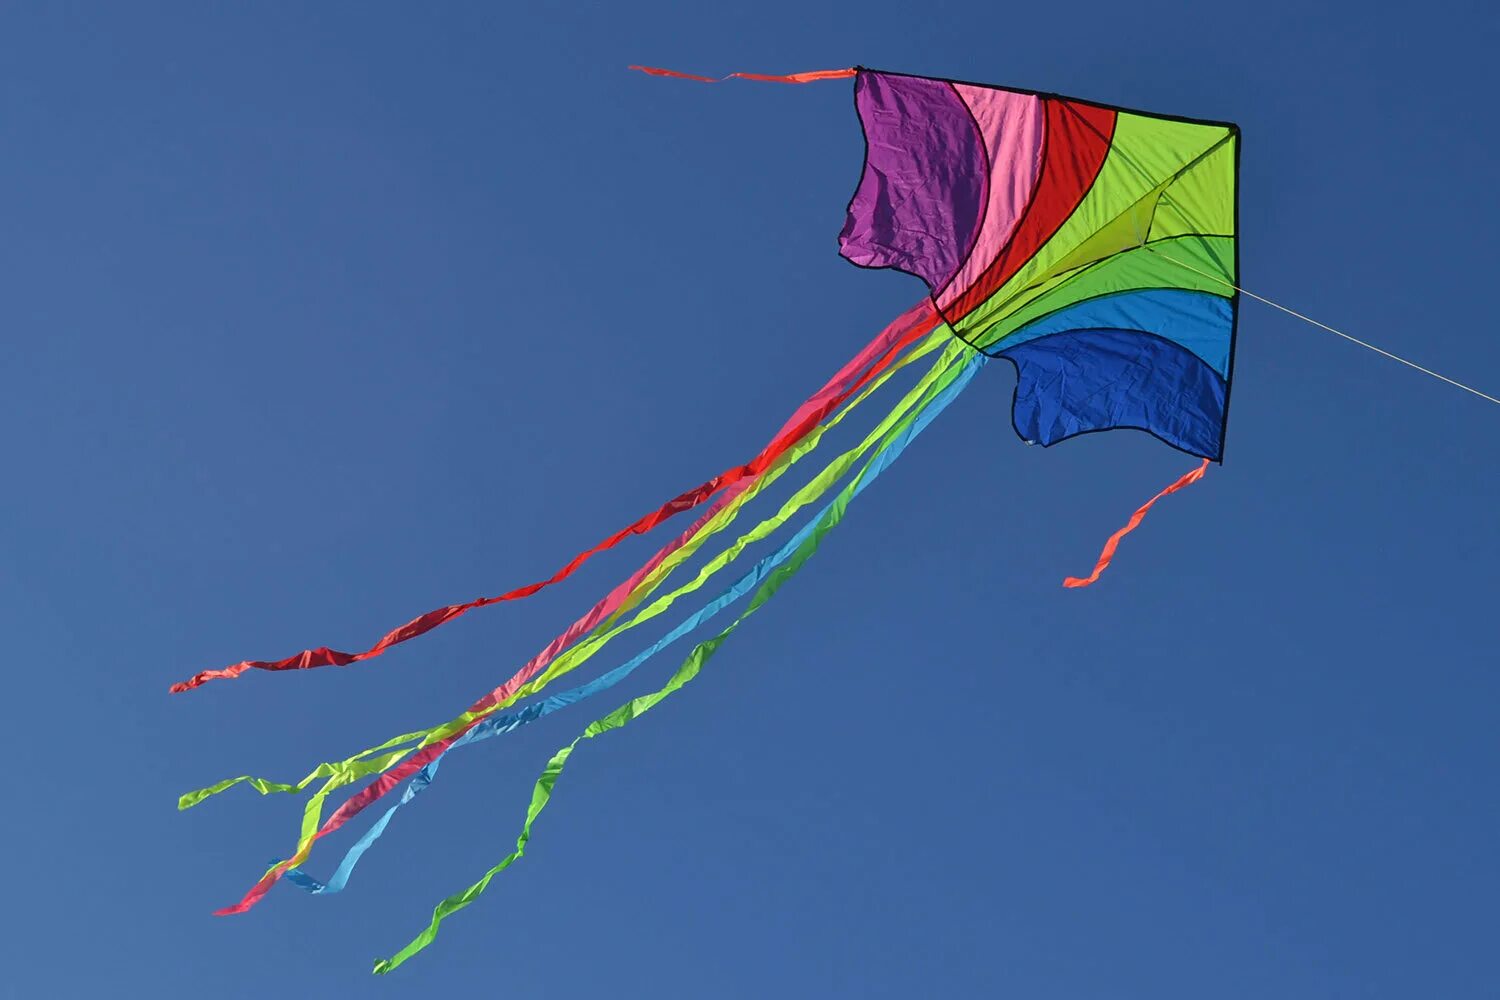 Nirvana Rainbow Kite 1.4m - Радужный воздушный змей. Каркас воздушного змея. Бумажный воздушный змей. Воздушный змей с лентами. Принцип воздушного змея